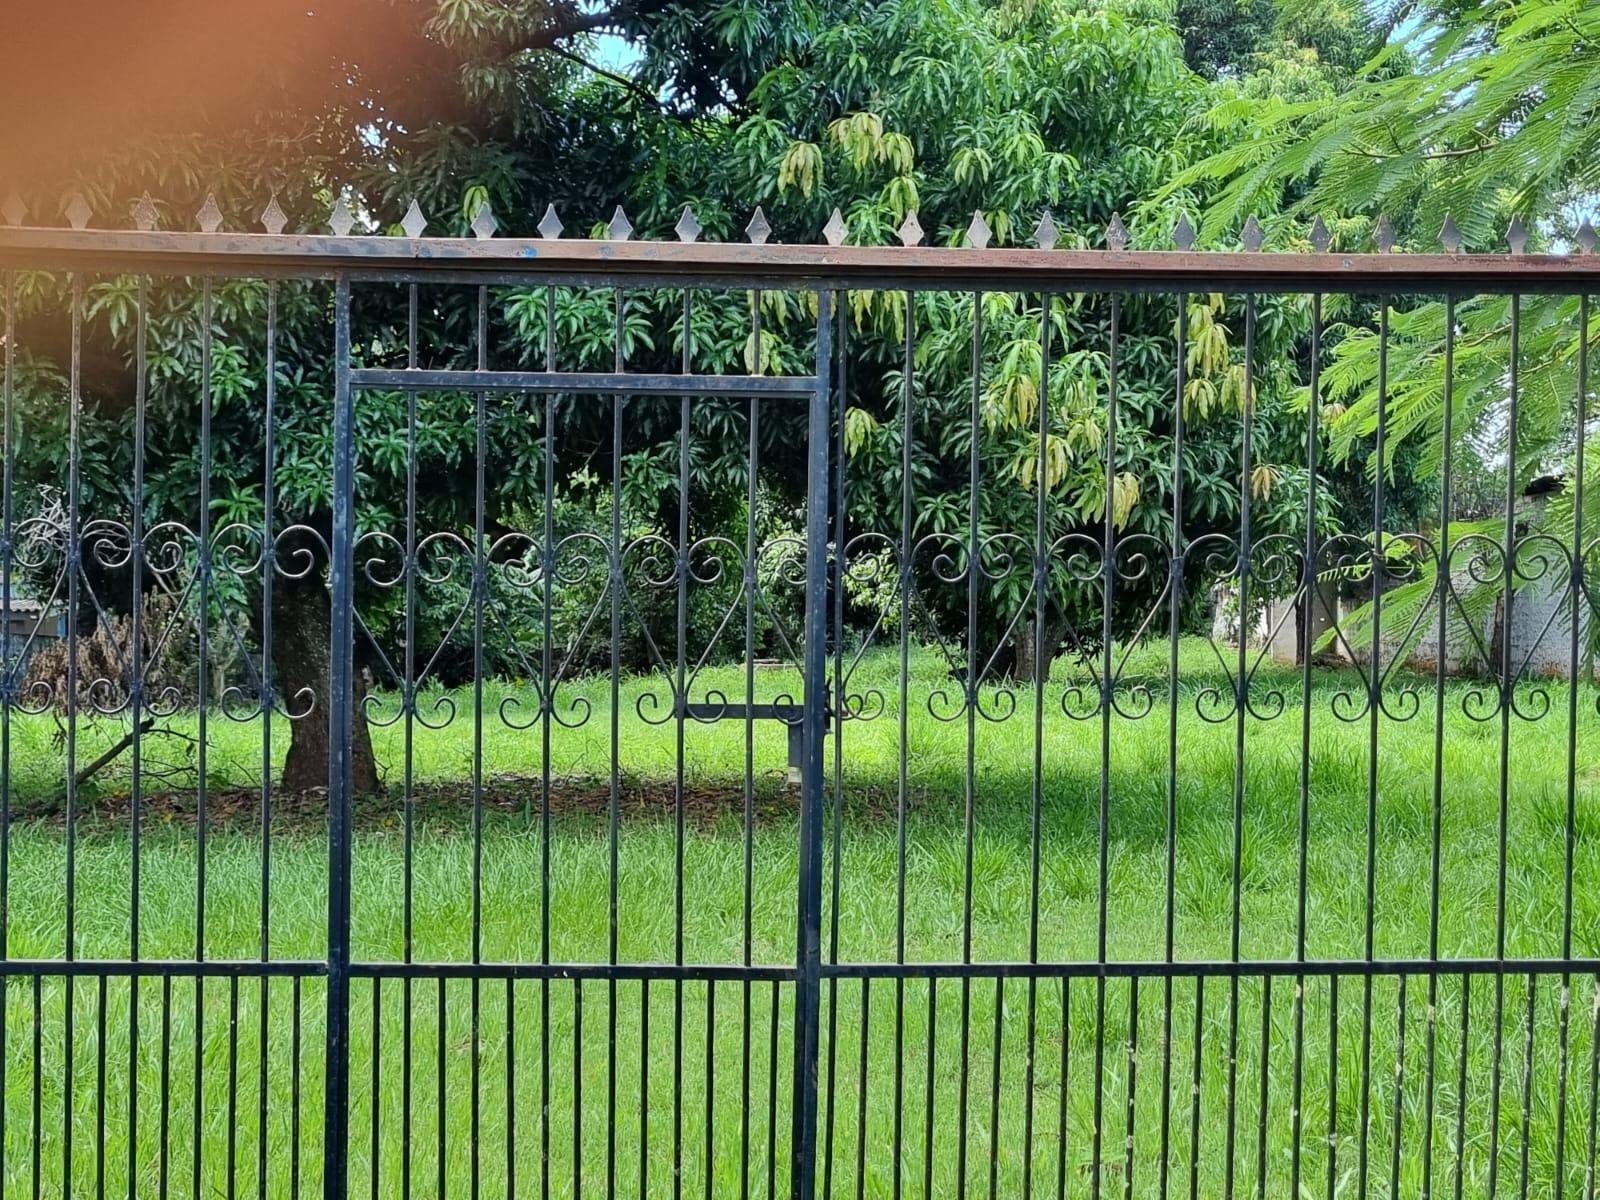 Terreno à venda no Jardim América, em Foz do Iguaçu - PR